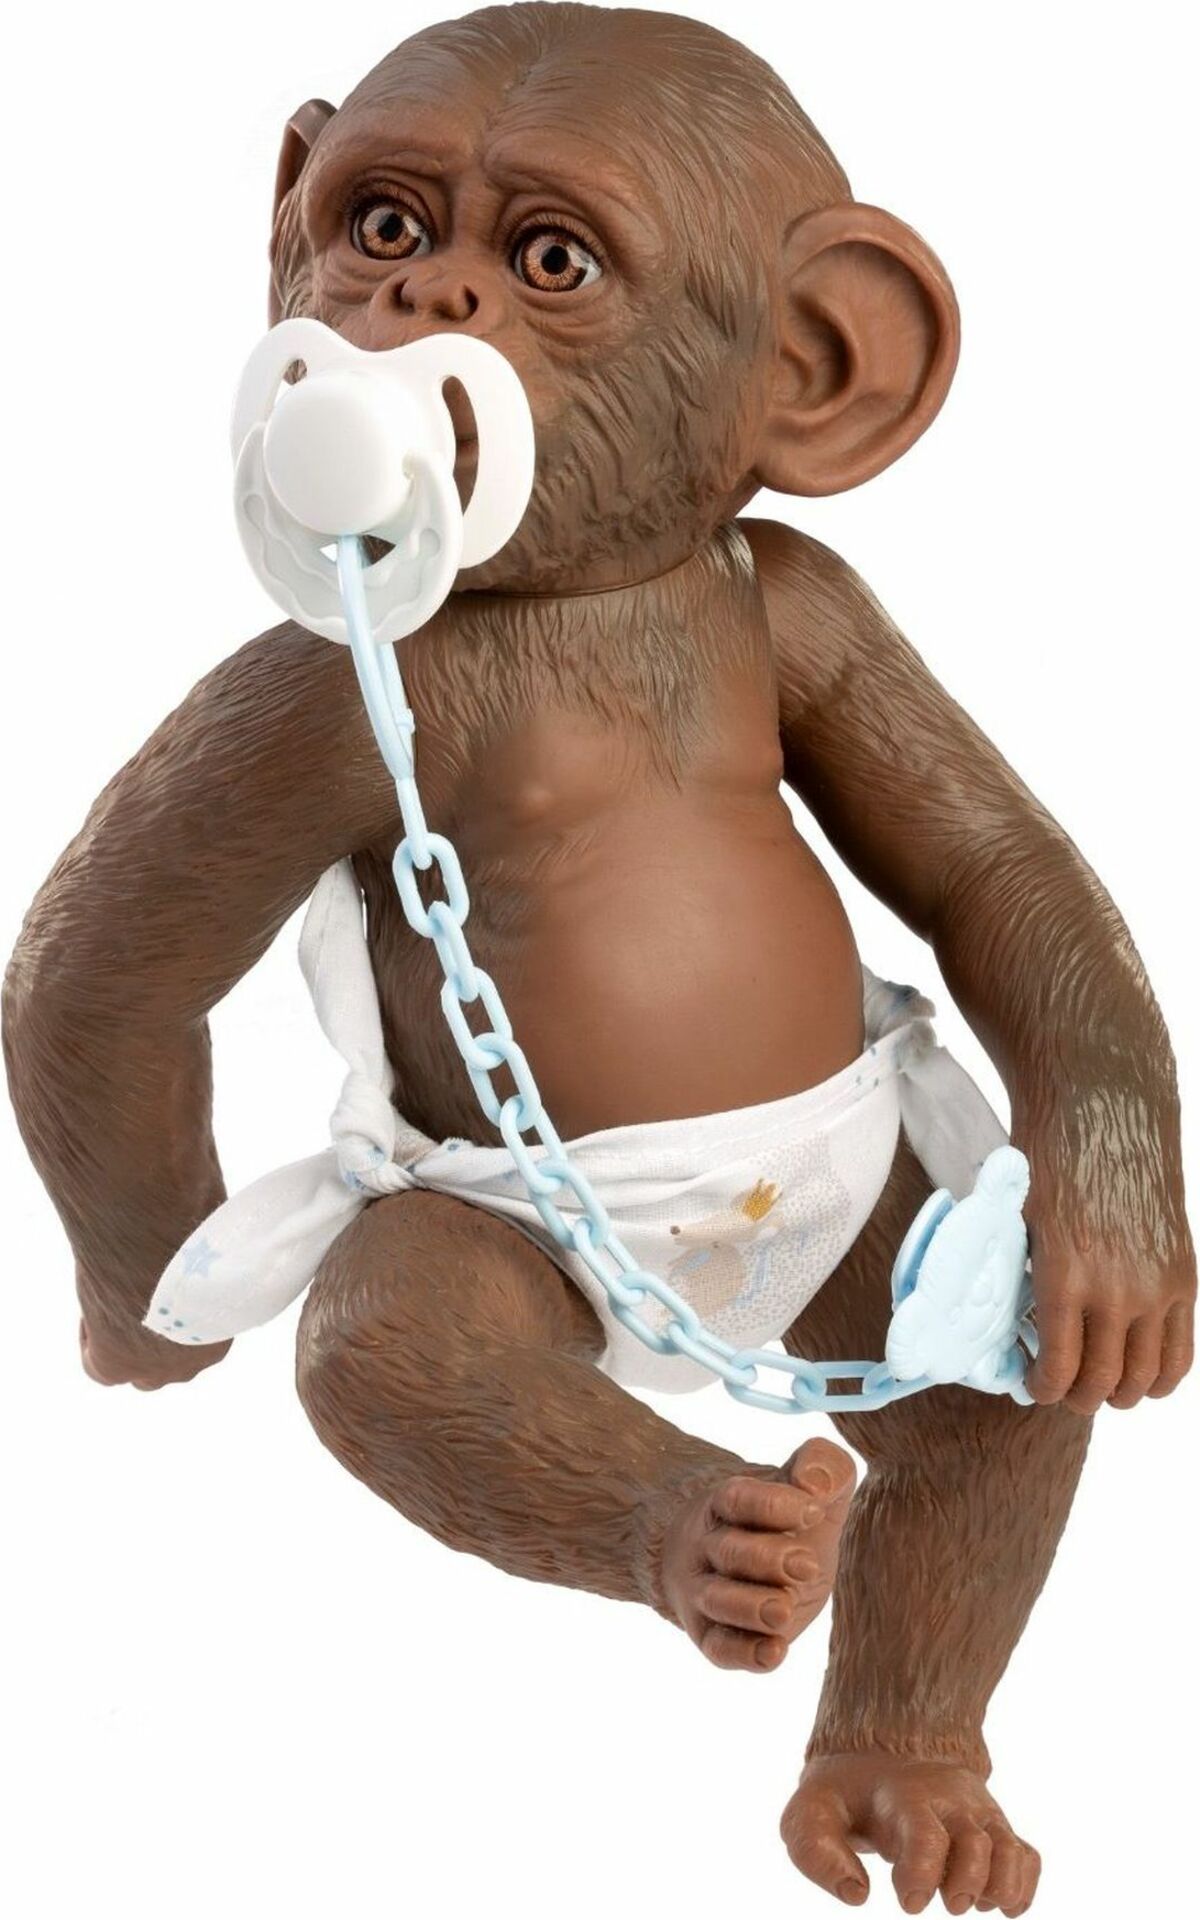 Guca 993 REBORN OPIČKA - realistická opička miminko s celovinylovým tělem - 32 cm